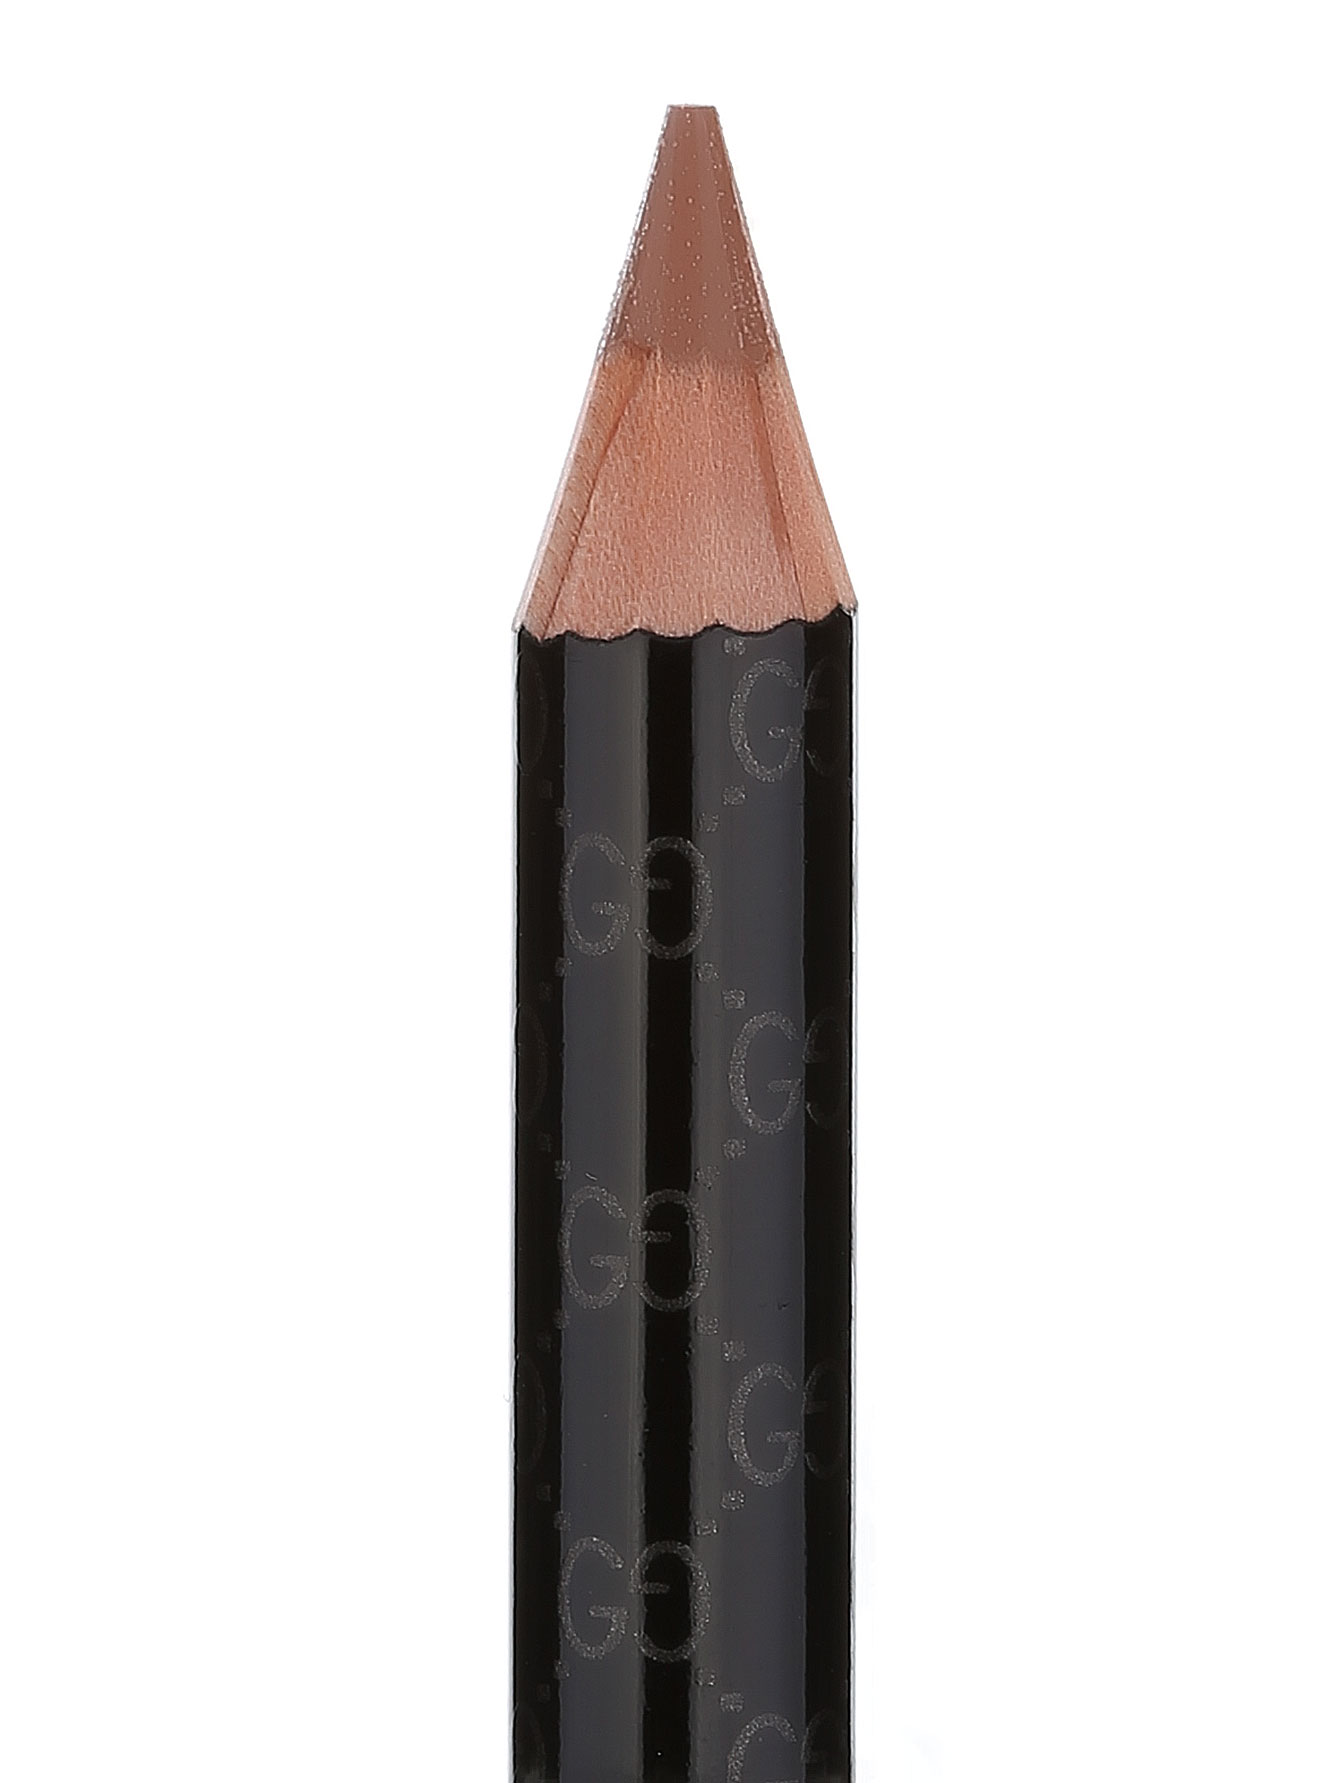  Карандаш для губ - №070 Burnt Cinnam, Makeup - Модель Верх-Низ